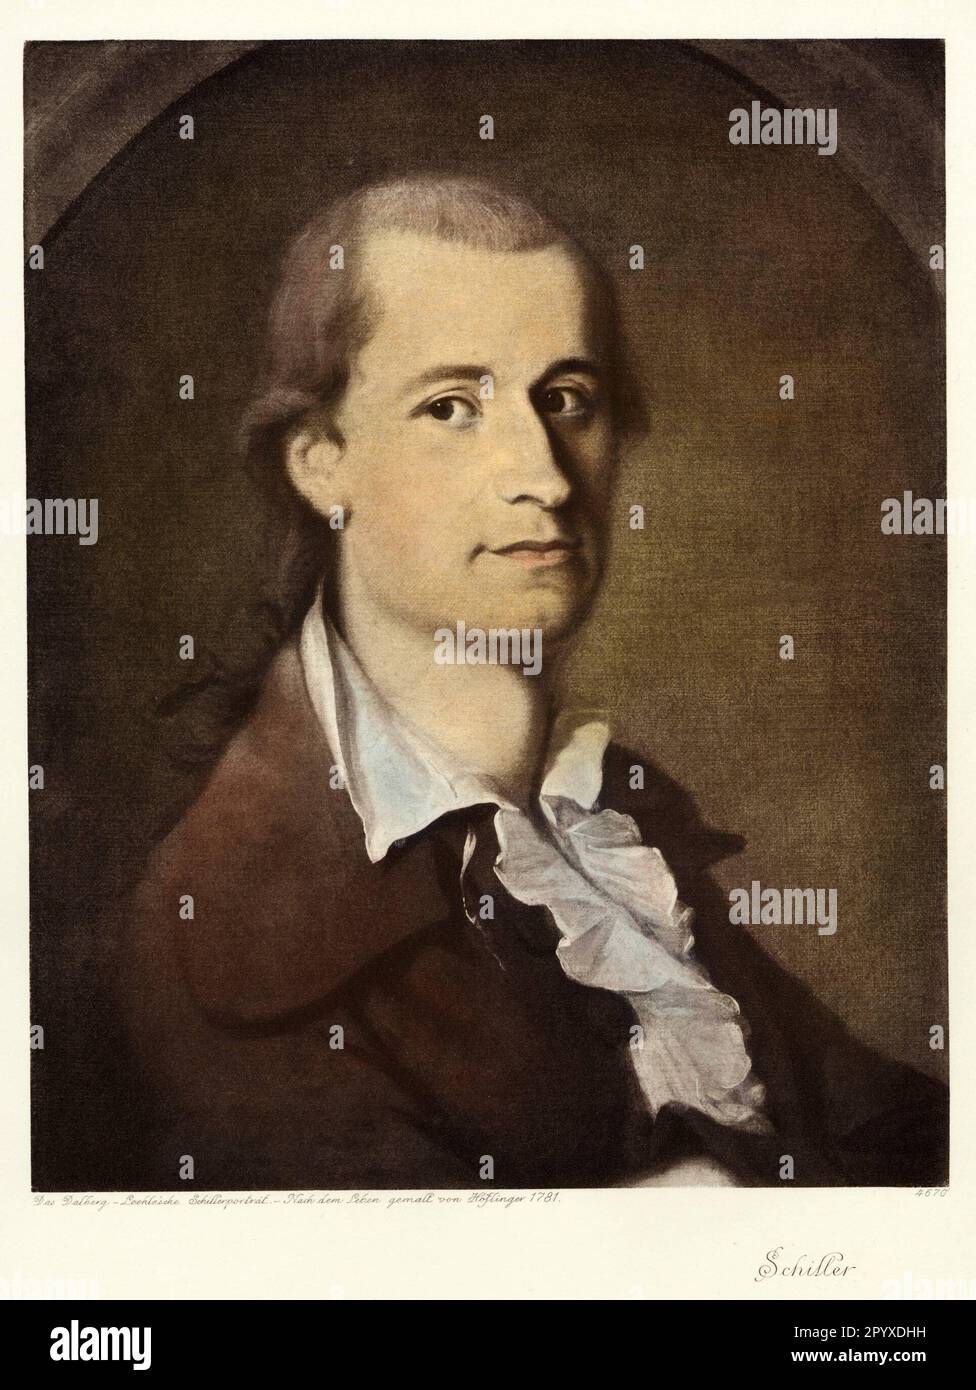 Friedrich von Schiller (1759-1805), deutscher Dichter, Gemälde von Höflinger aus dem Jahre 1781. Foto: Heliogravure, Corpus Imaginum, Hanfstaengl Collection. [Maschinelle Übersetzung] Stockfoto